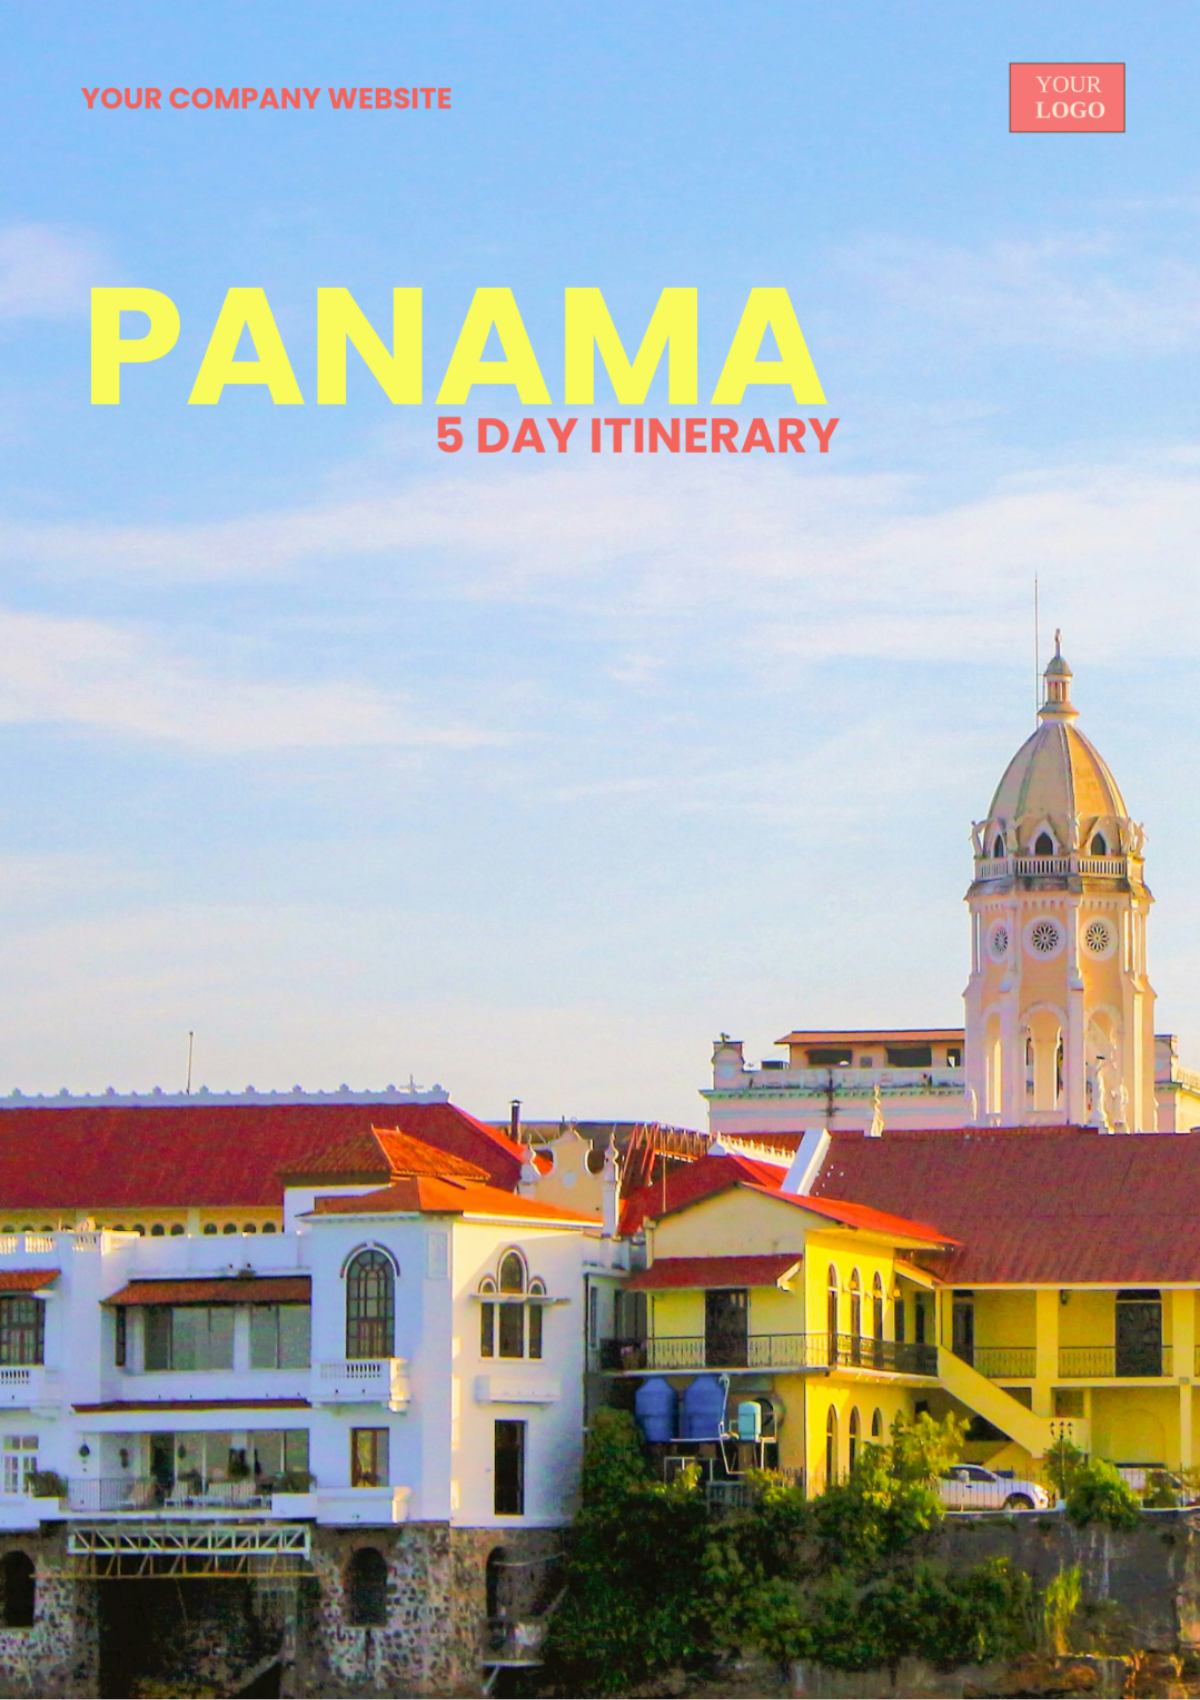 5 Day Panama Itinerary Template